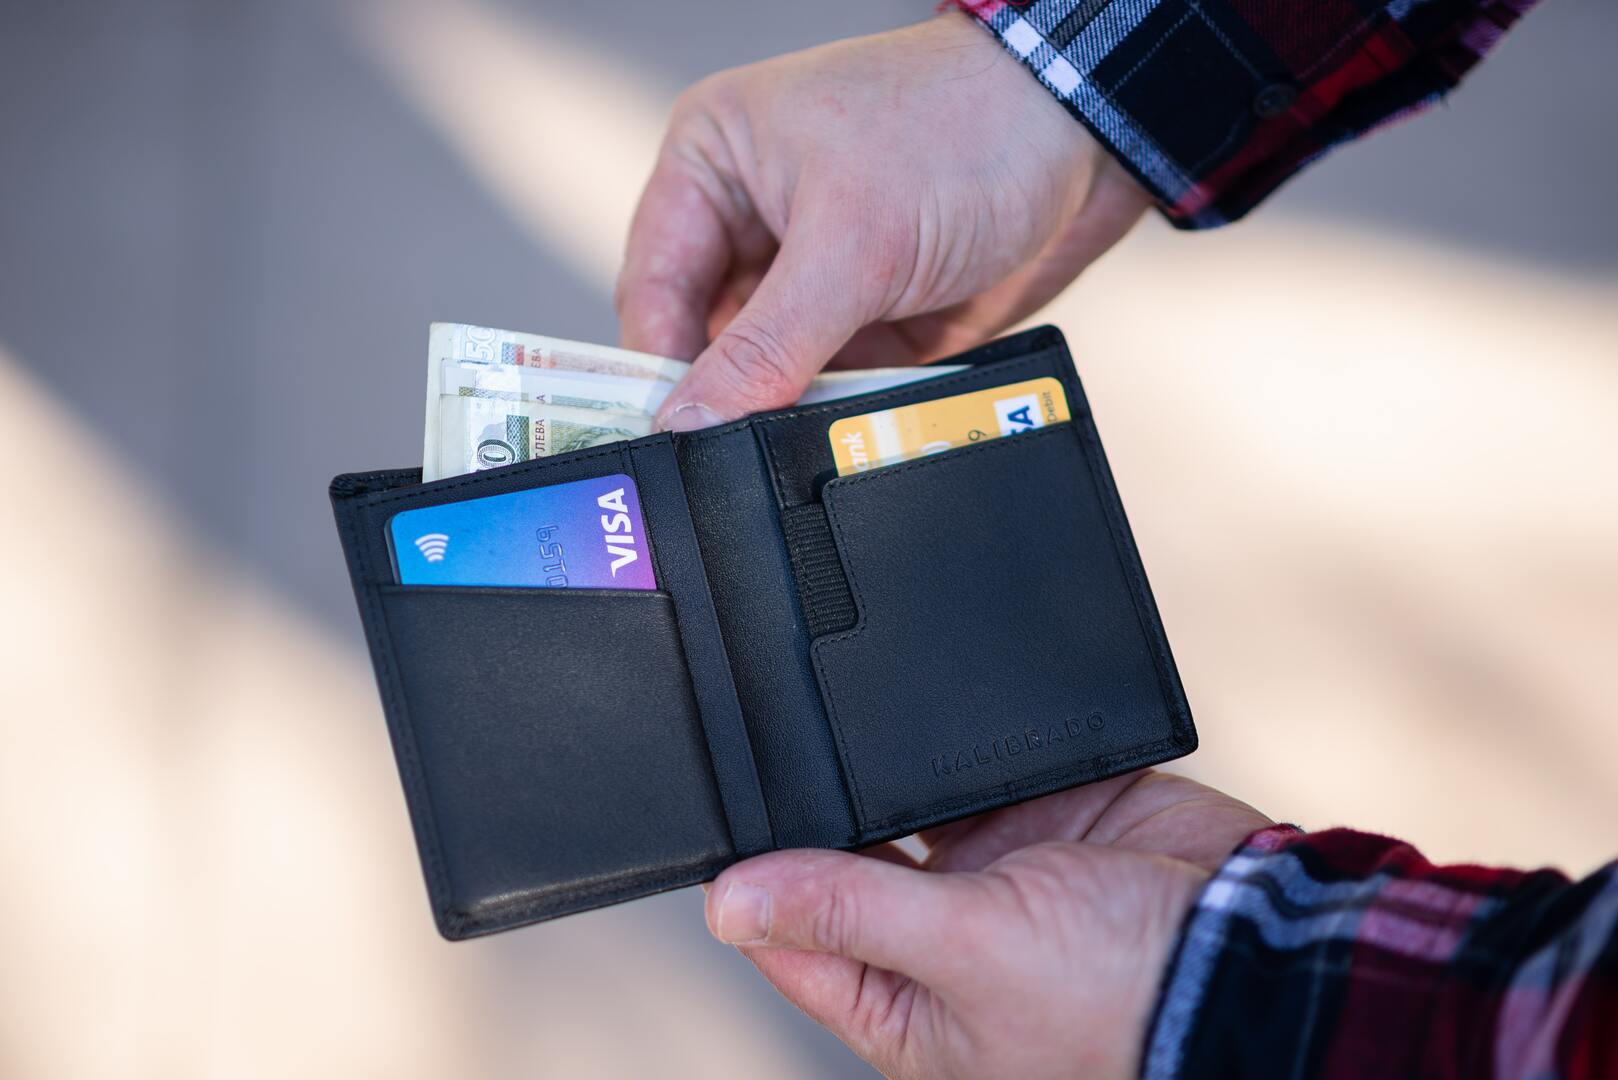 Neben Bargeld und EC-Karte gehört die Kreditkarte für viele Menschen zu den häufig genutzten Zahlungsmitteln. Dabei ist bereits der Einsatz der Kreditkarte eine Form der Finanzierung, bei der die Bank dem Kunden einen Mini-Kredit bewilligt.